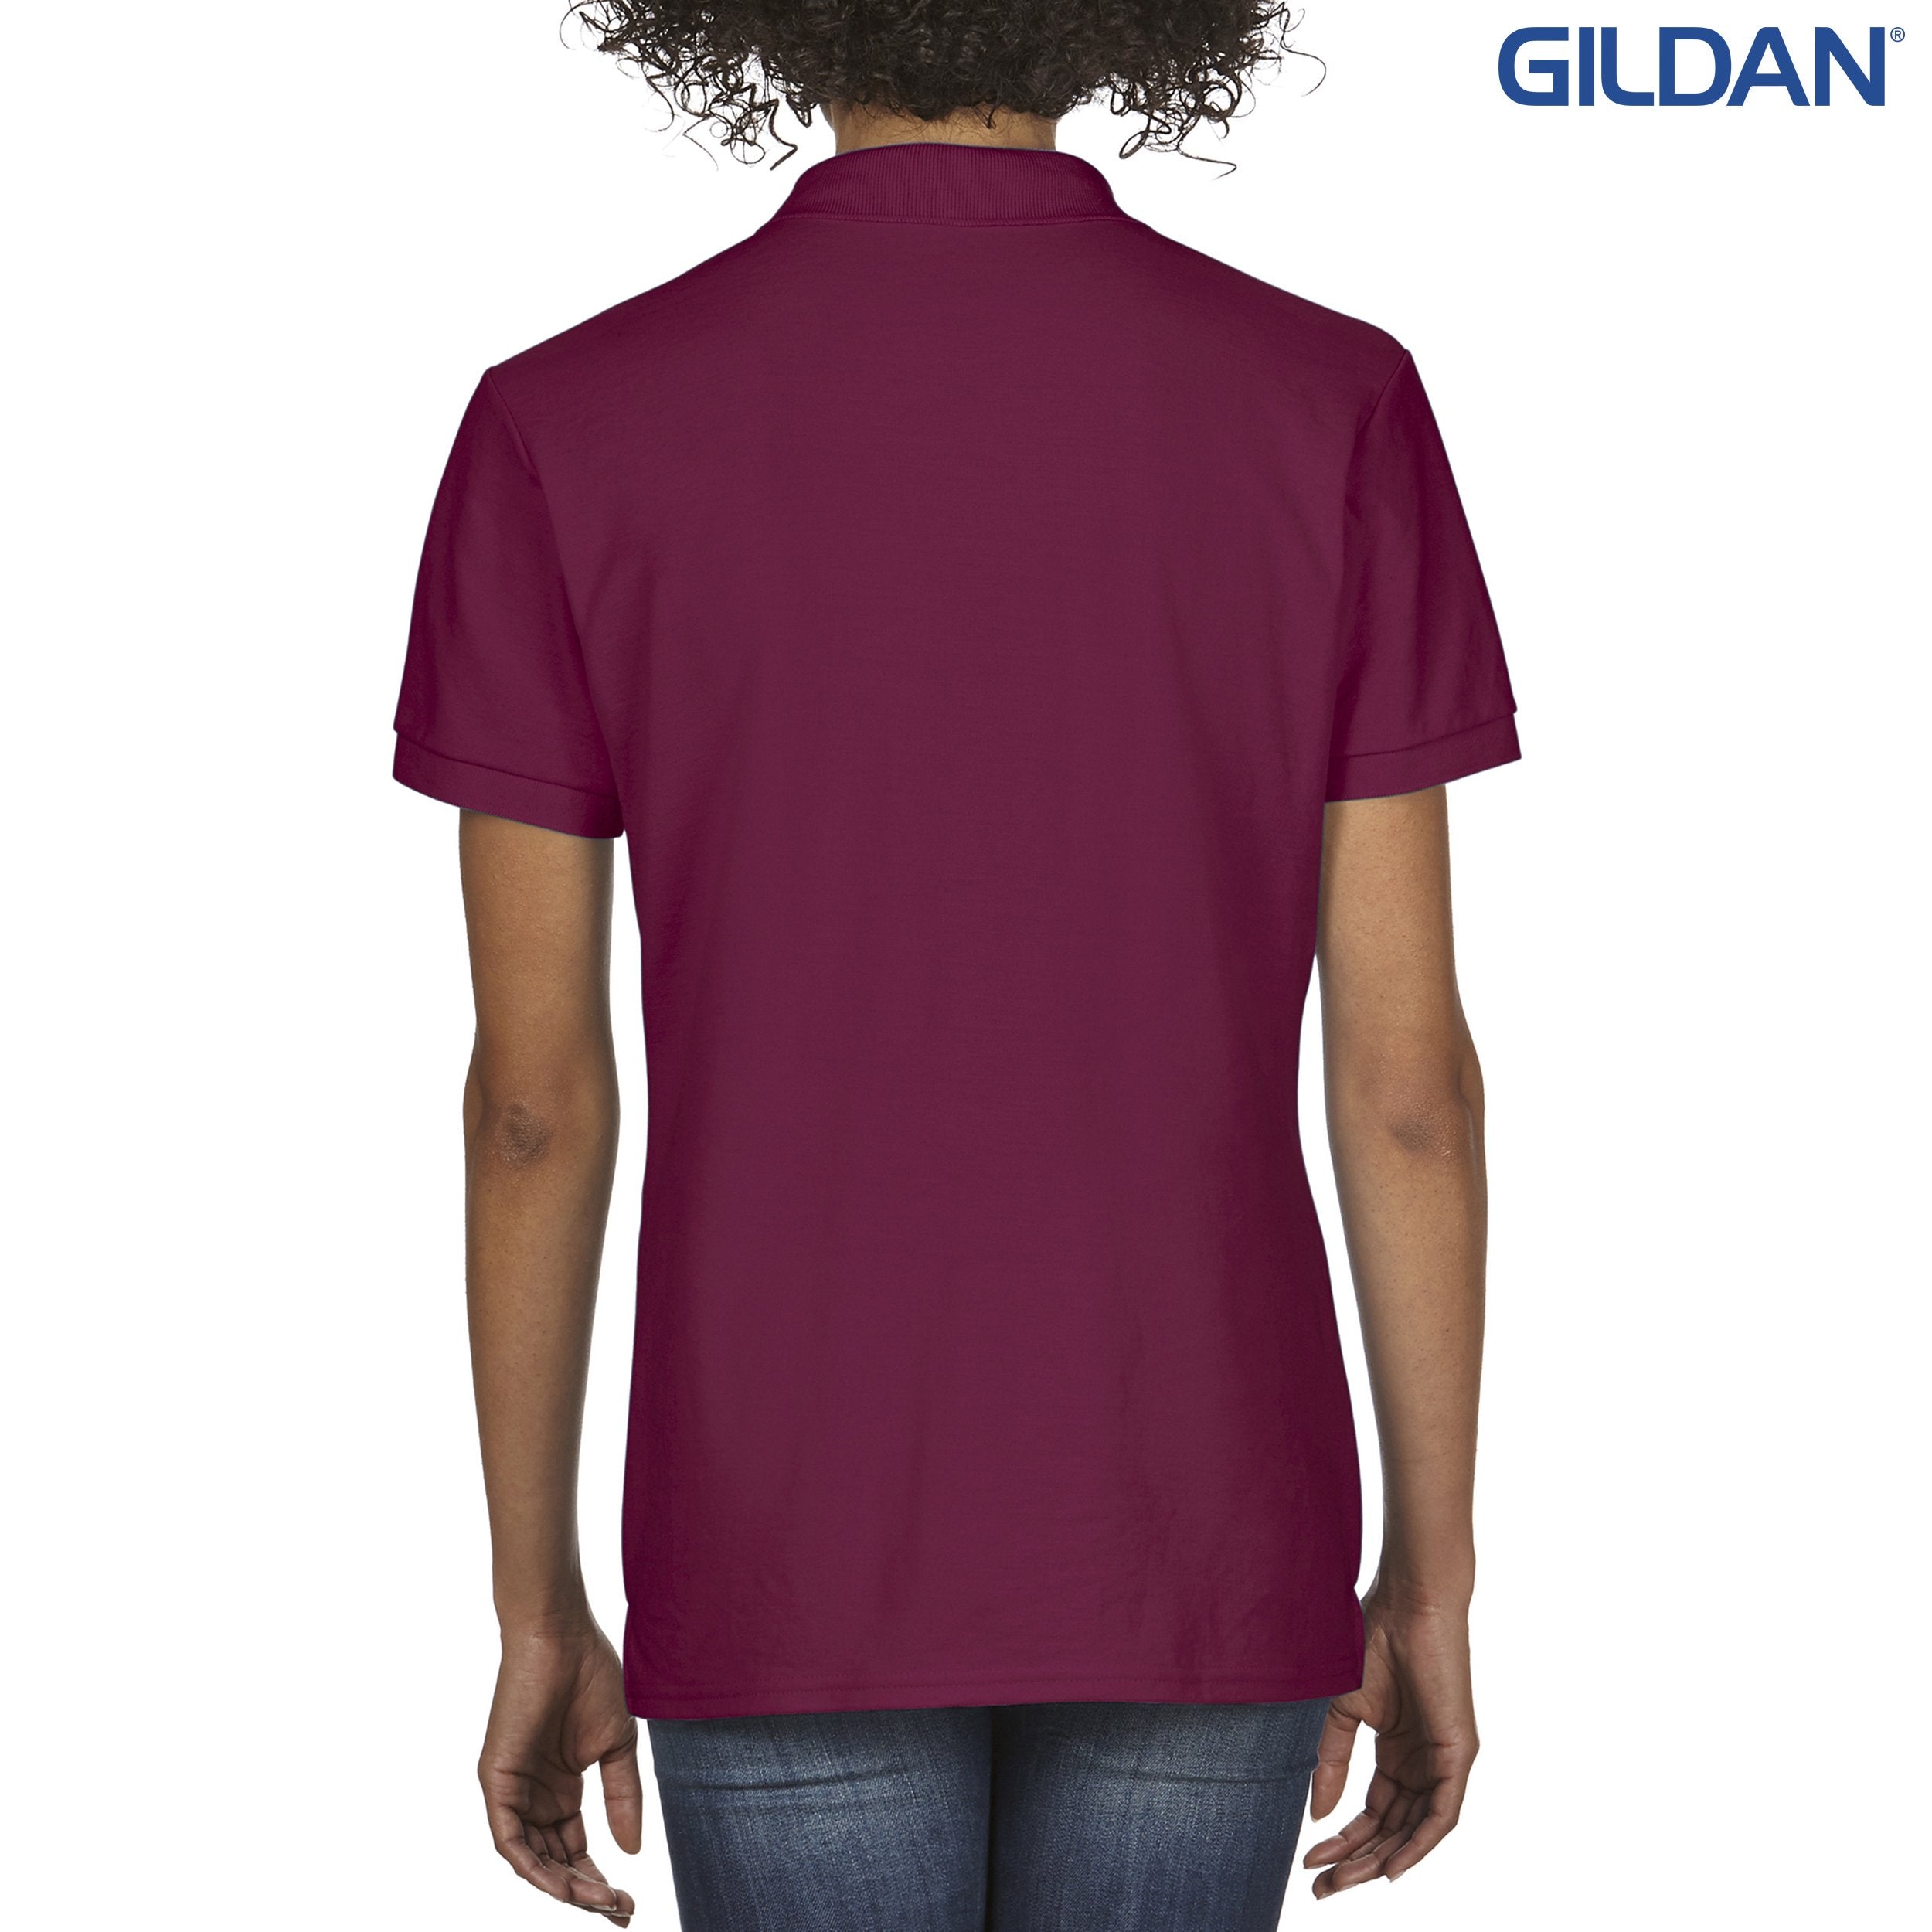 72800L Gildan DryBlend Ladies’ Double Pique Sport Shirt